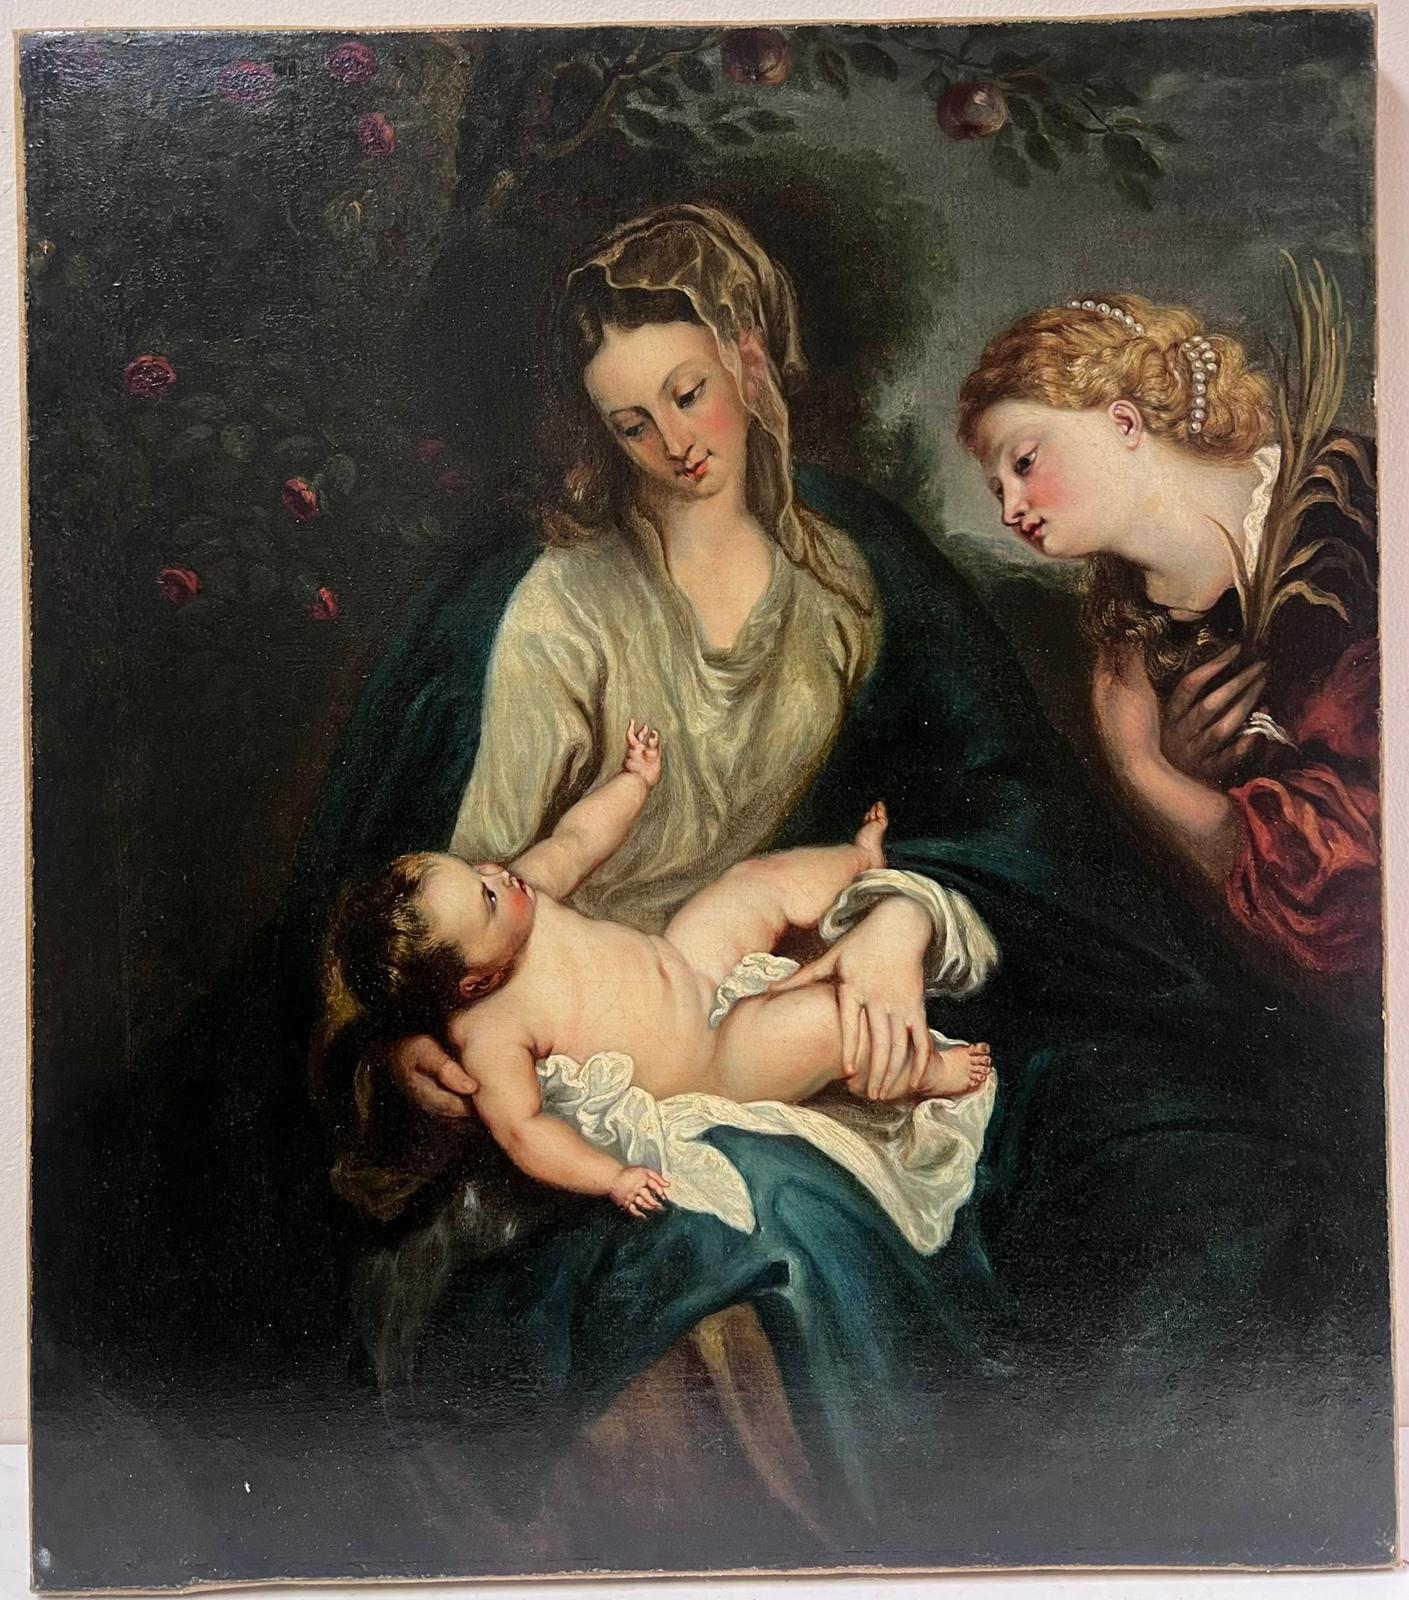 Feines britisches Ölgemälde aus dem 18. Jahrhundert Mutter & Kleinkind in Anbetung – Painting von after Anthony van Dyke